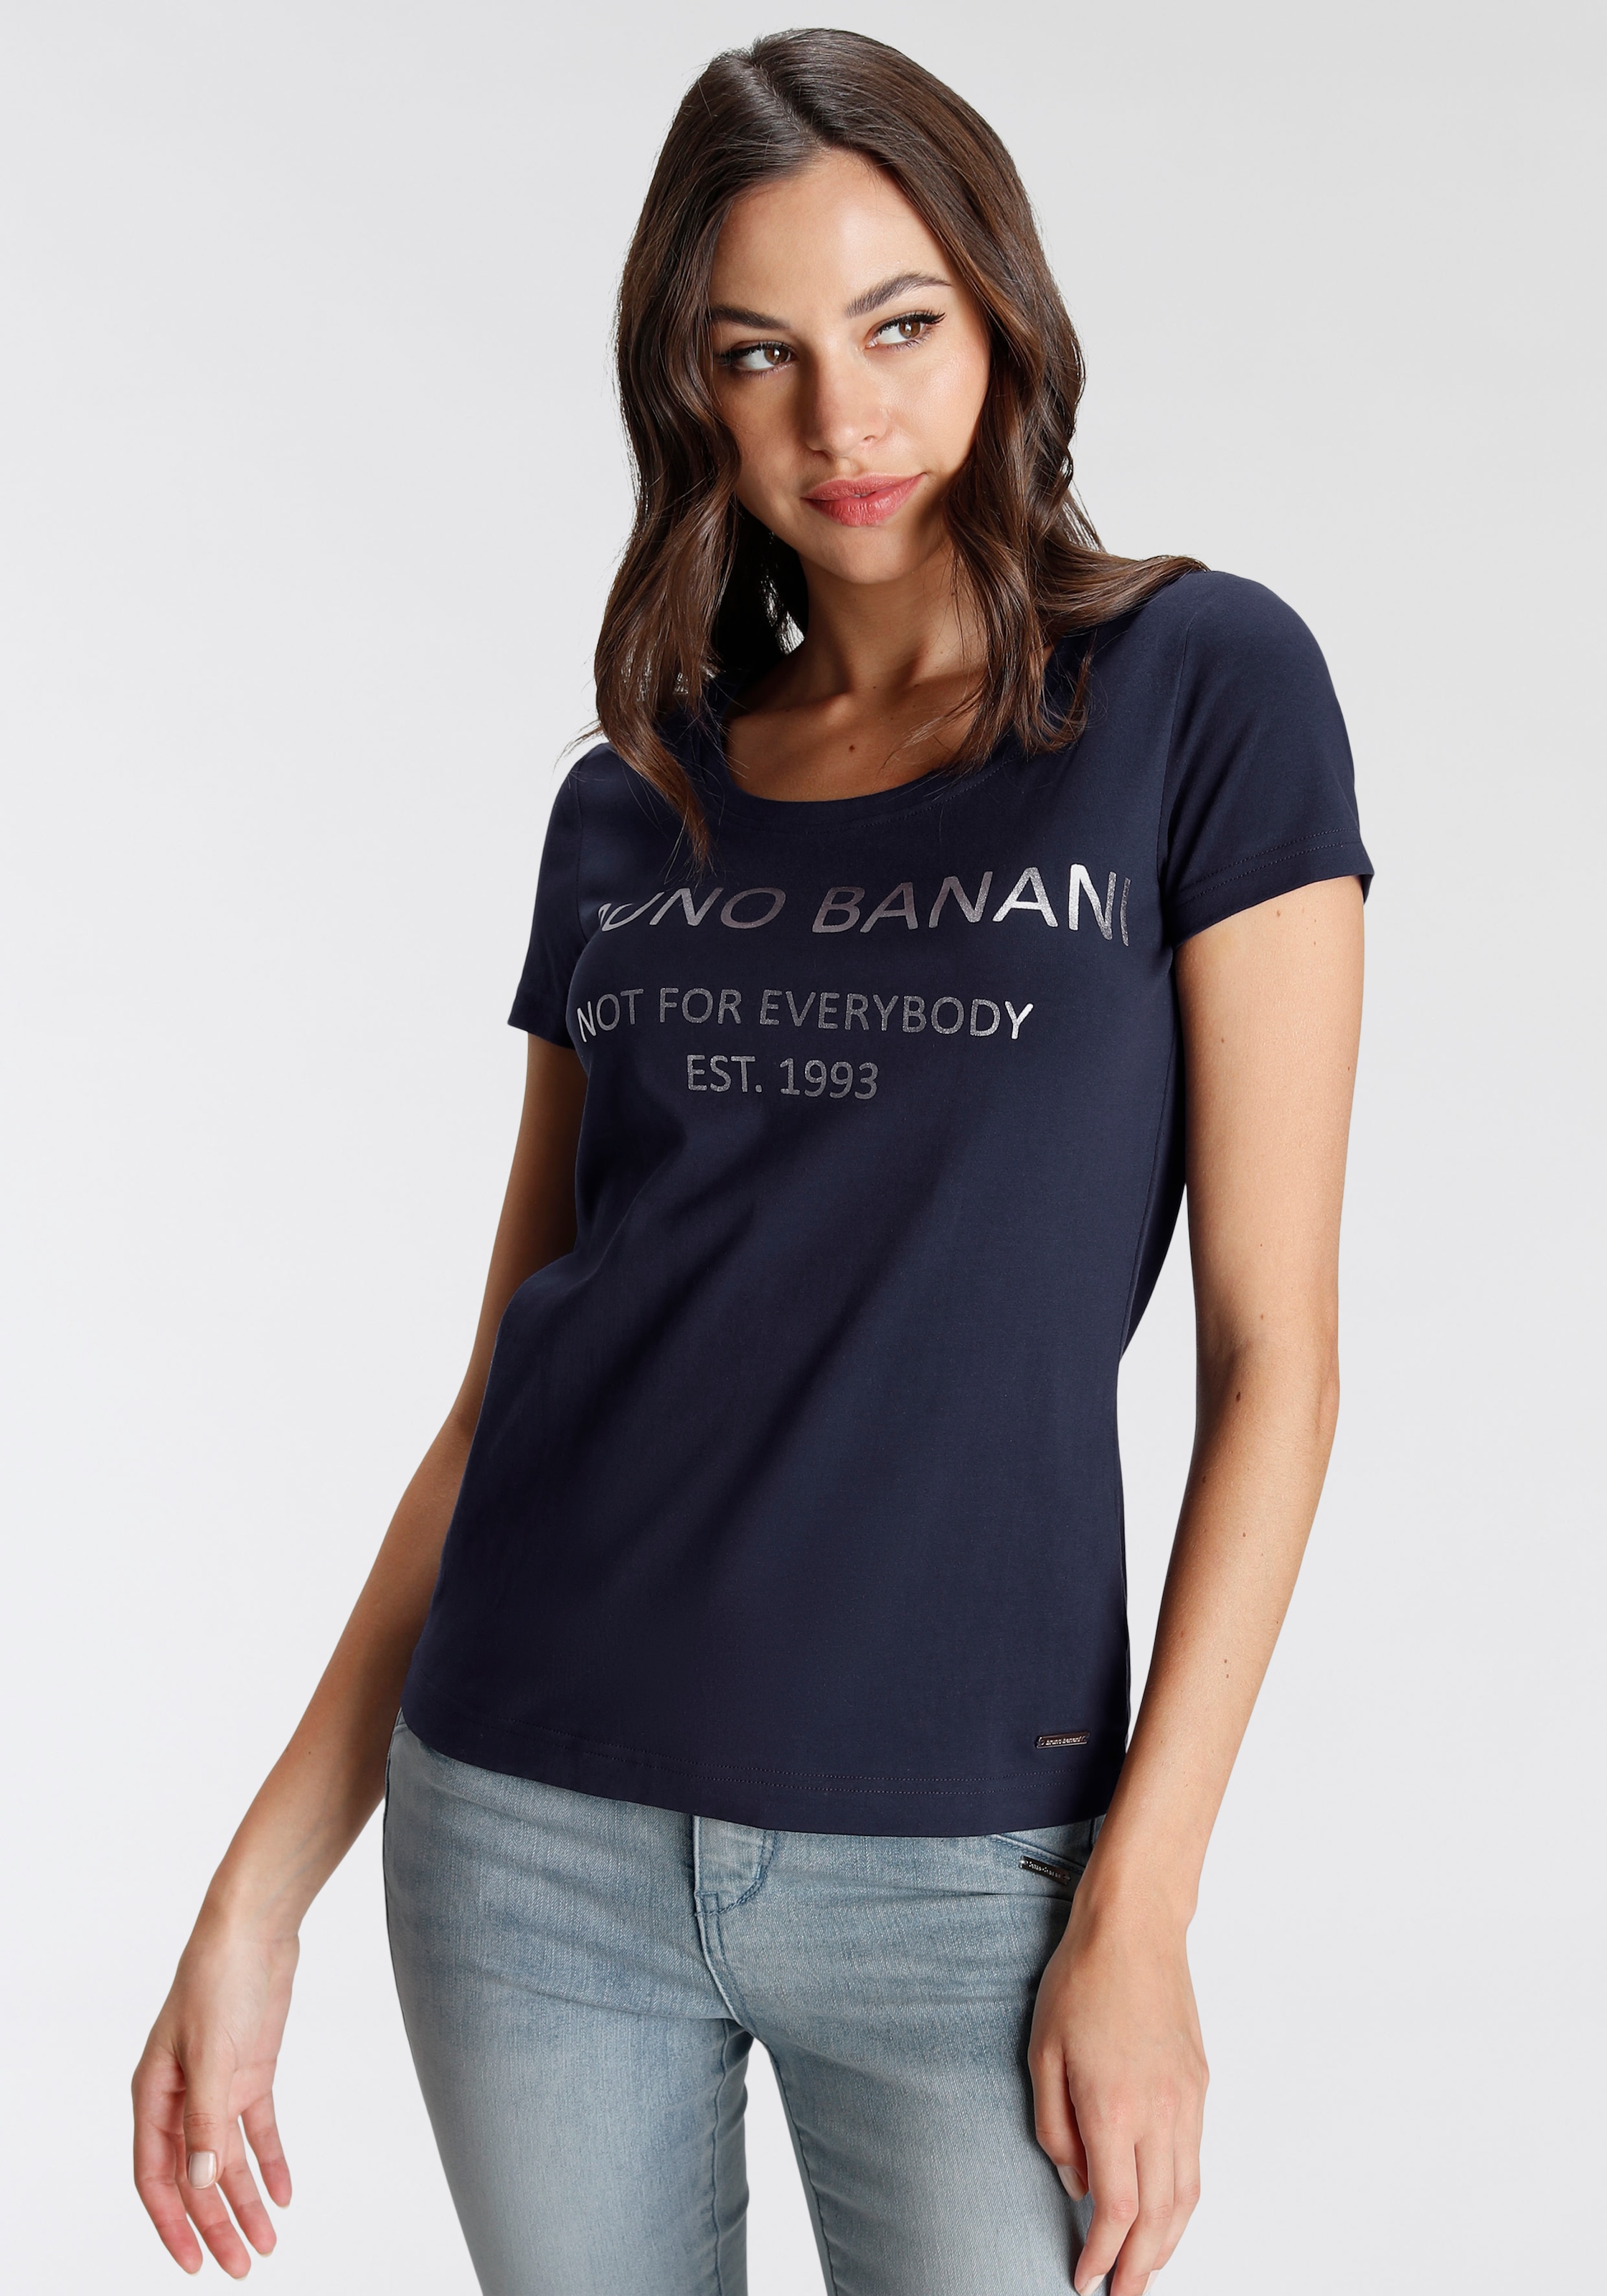 NEUE shoppen KOLLEKTION | goldfarbenem mit Banani Bruno I\'m T-Shirt, walking Logodruck